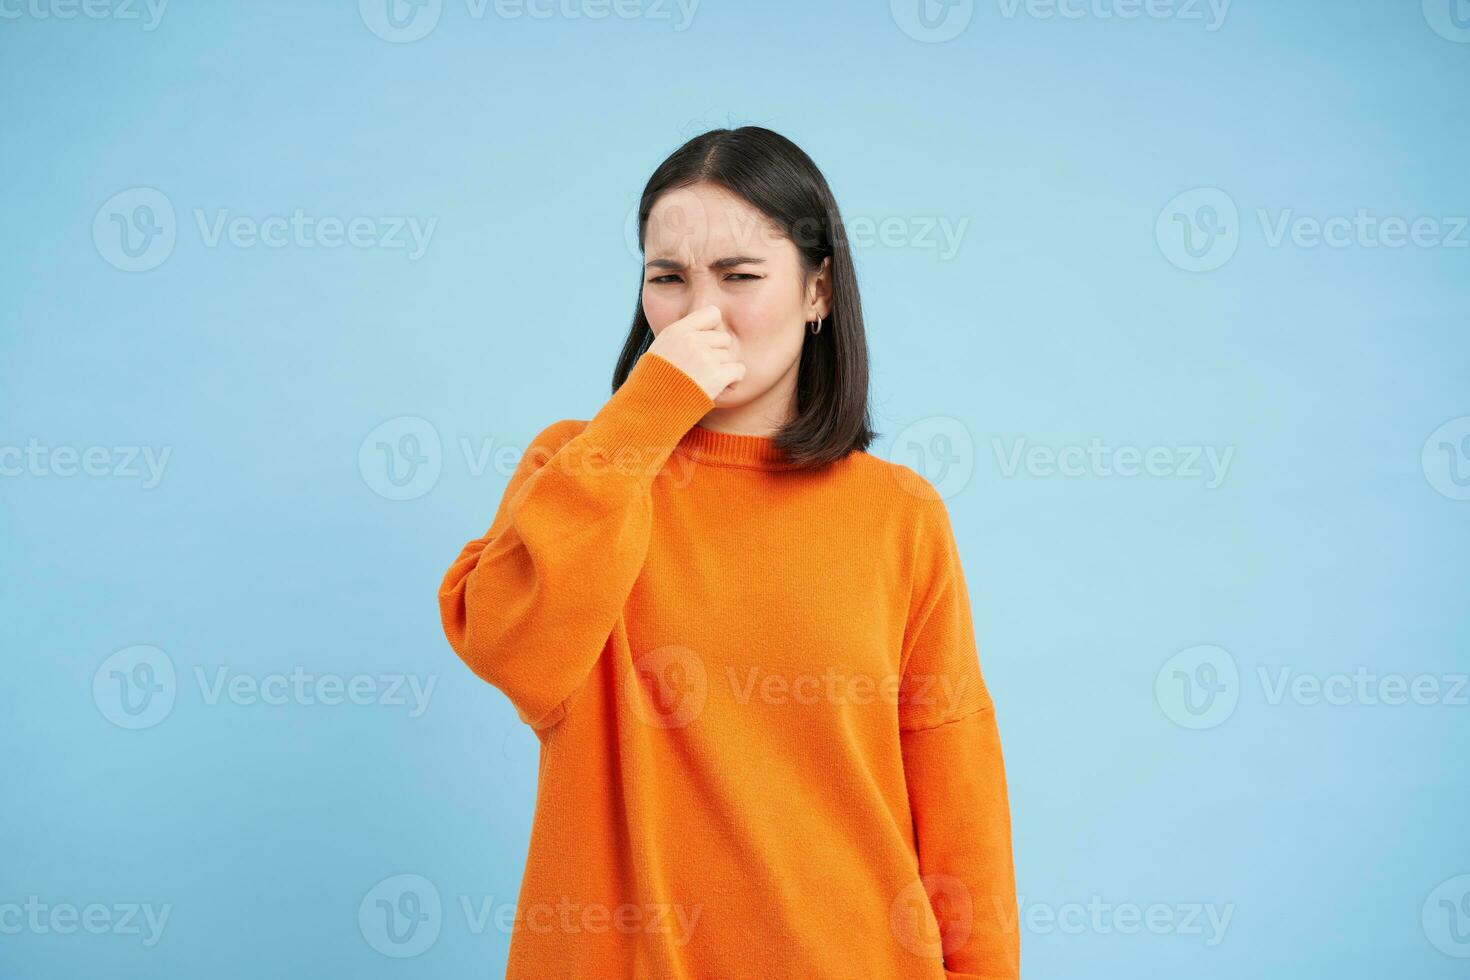 något stinker. ung asiatisk kvinna stängs henne näsa med fingrar från dålig lukt, bär orange tröja, står över blå bakgrund foto